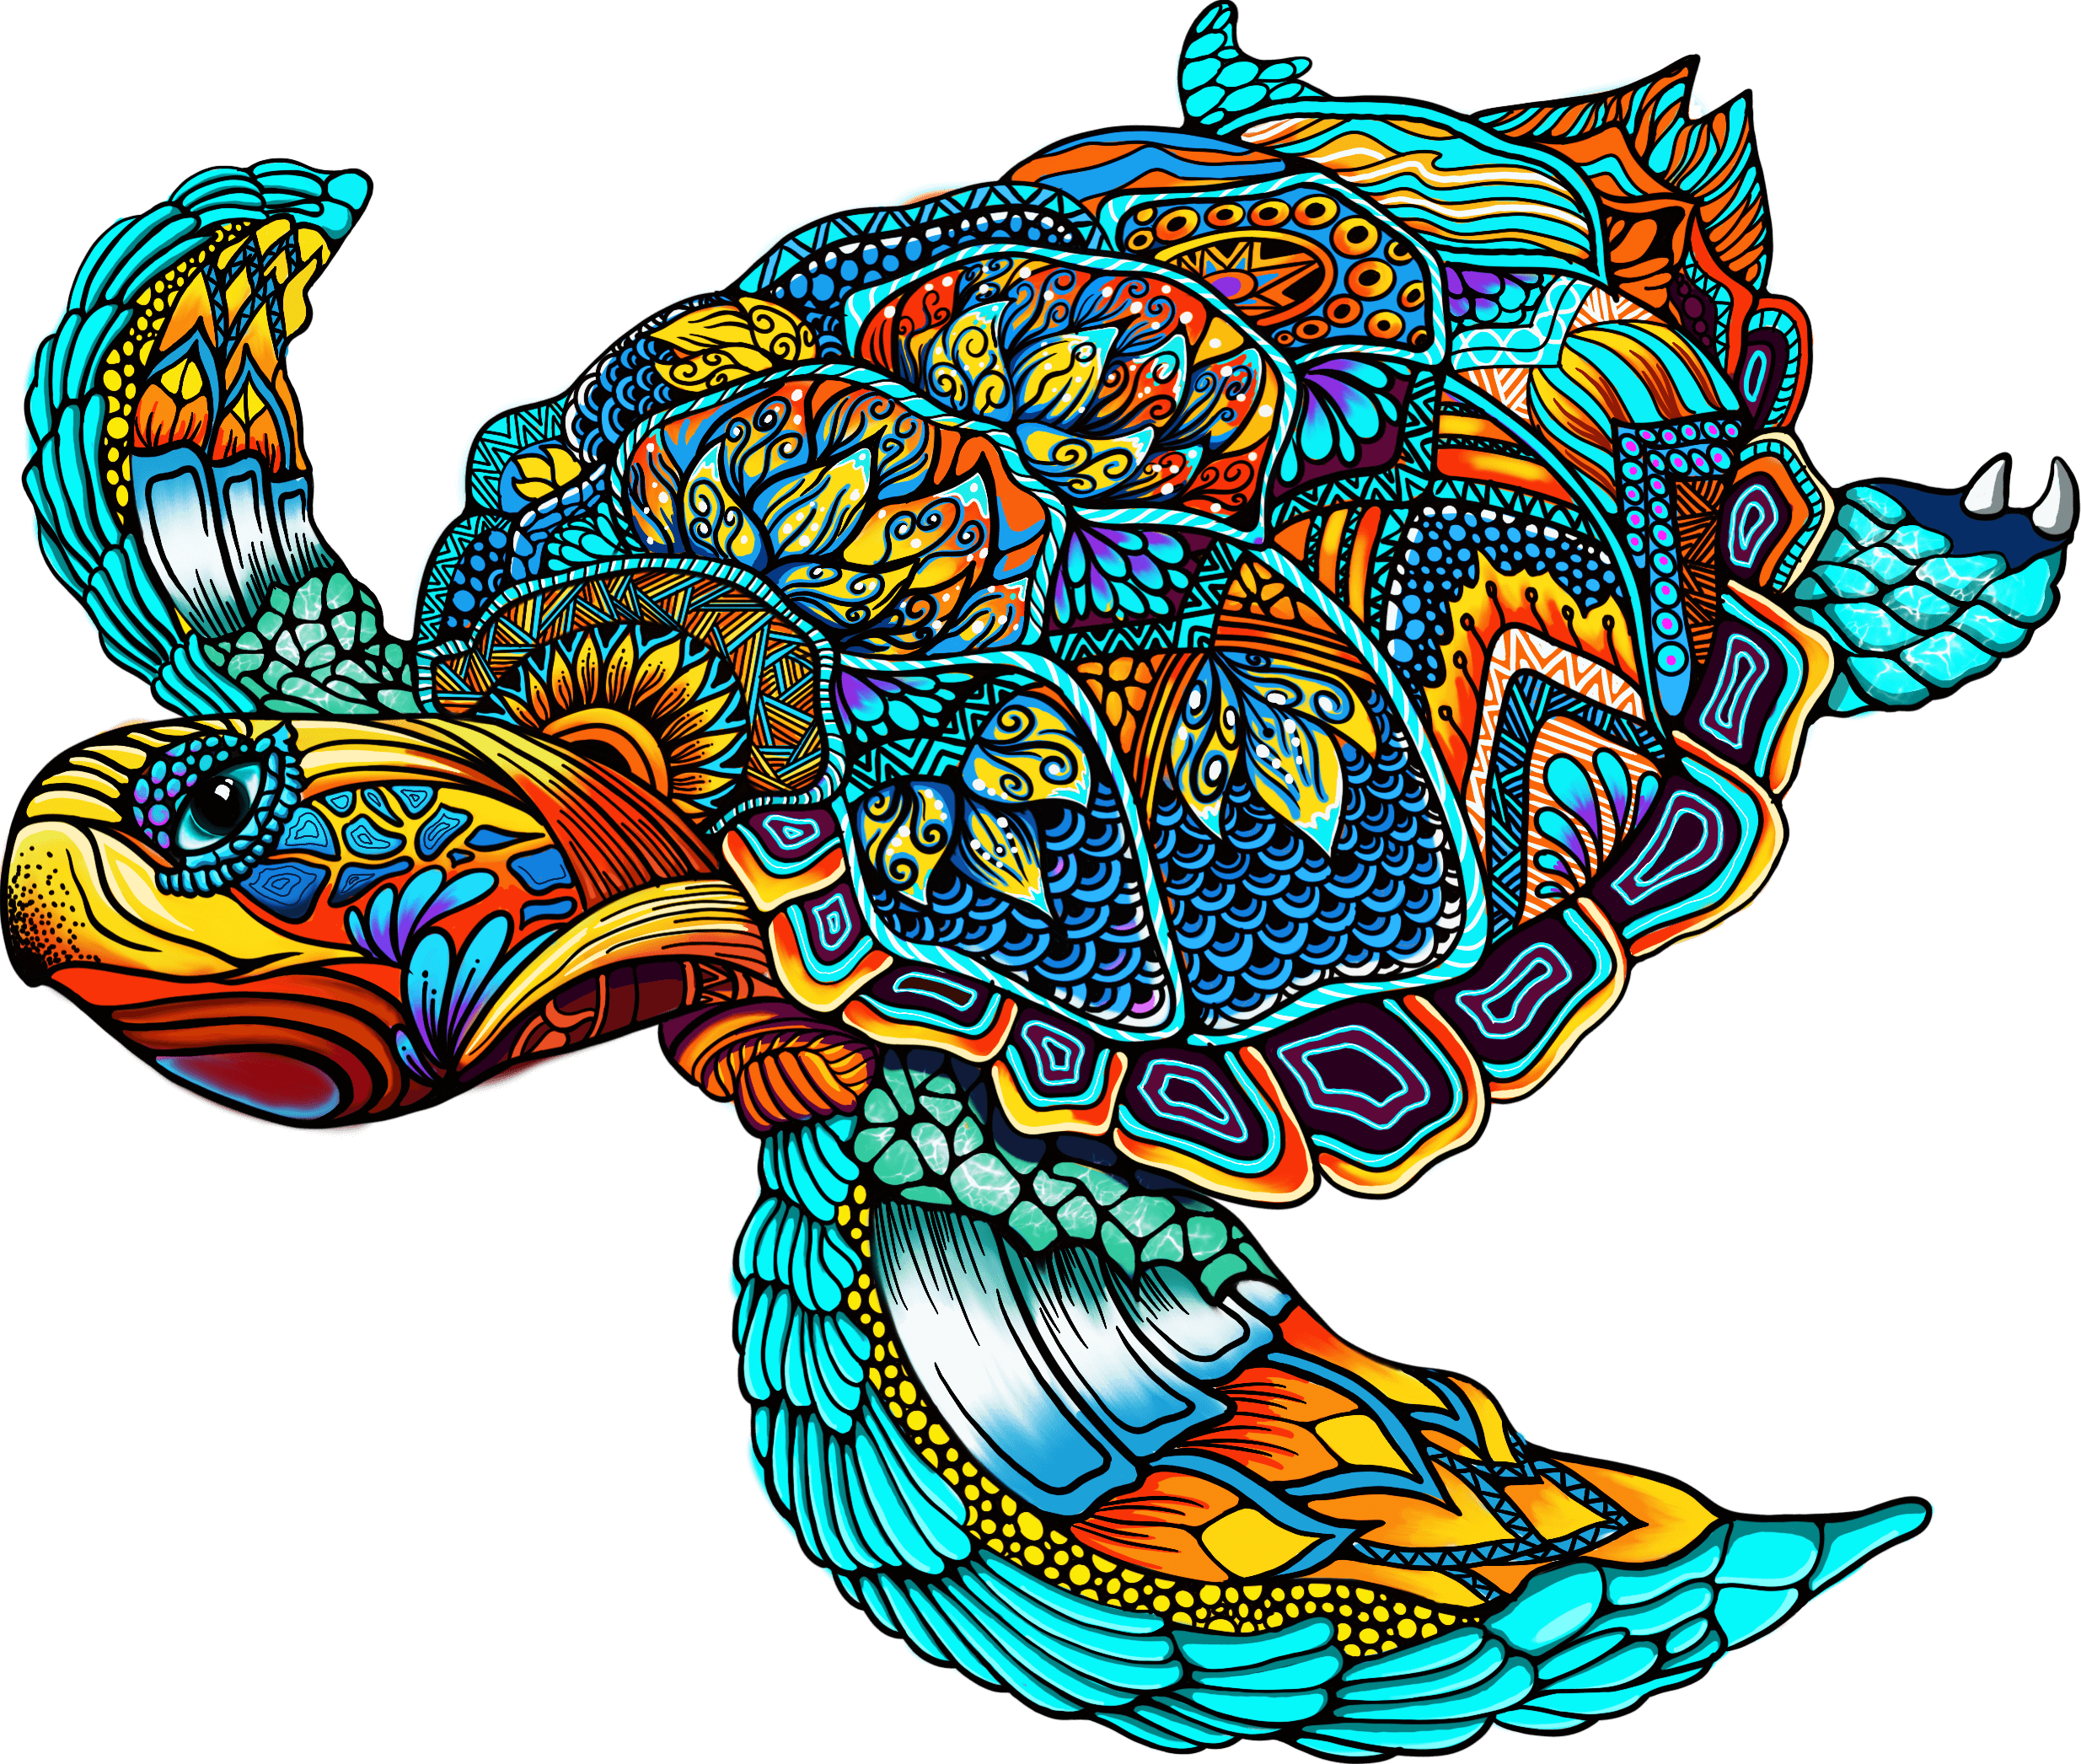 Colourful turtle